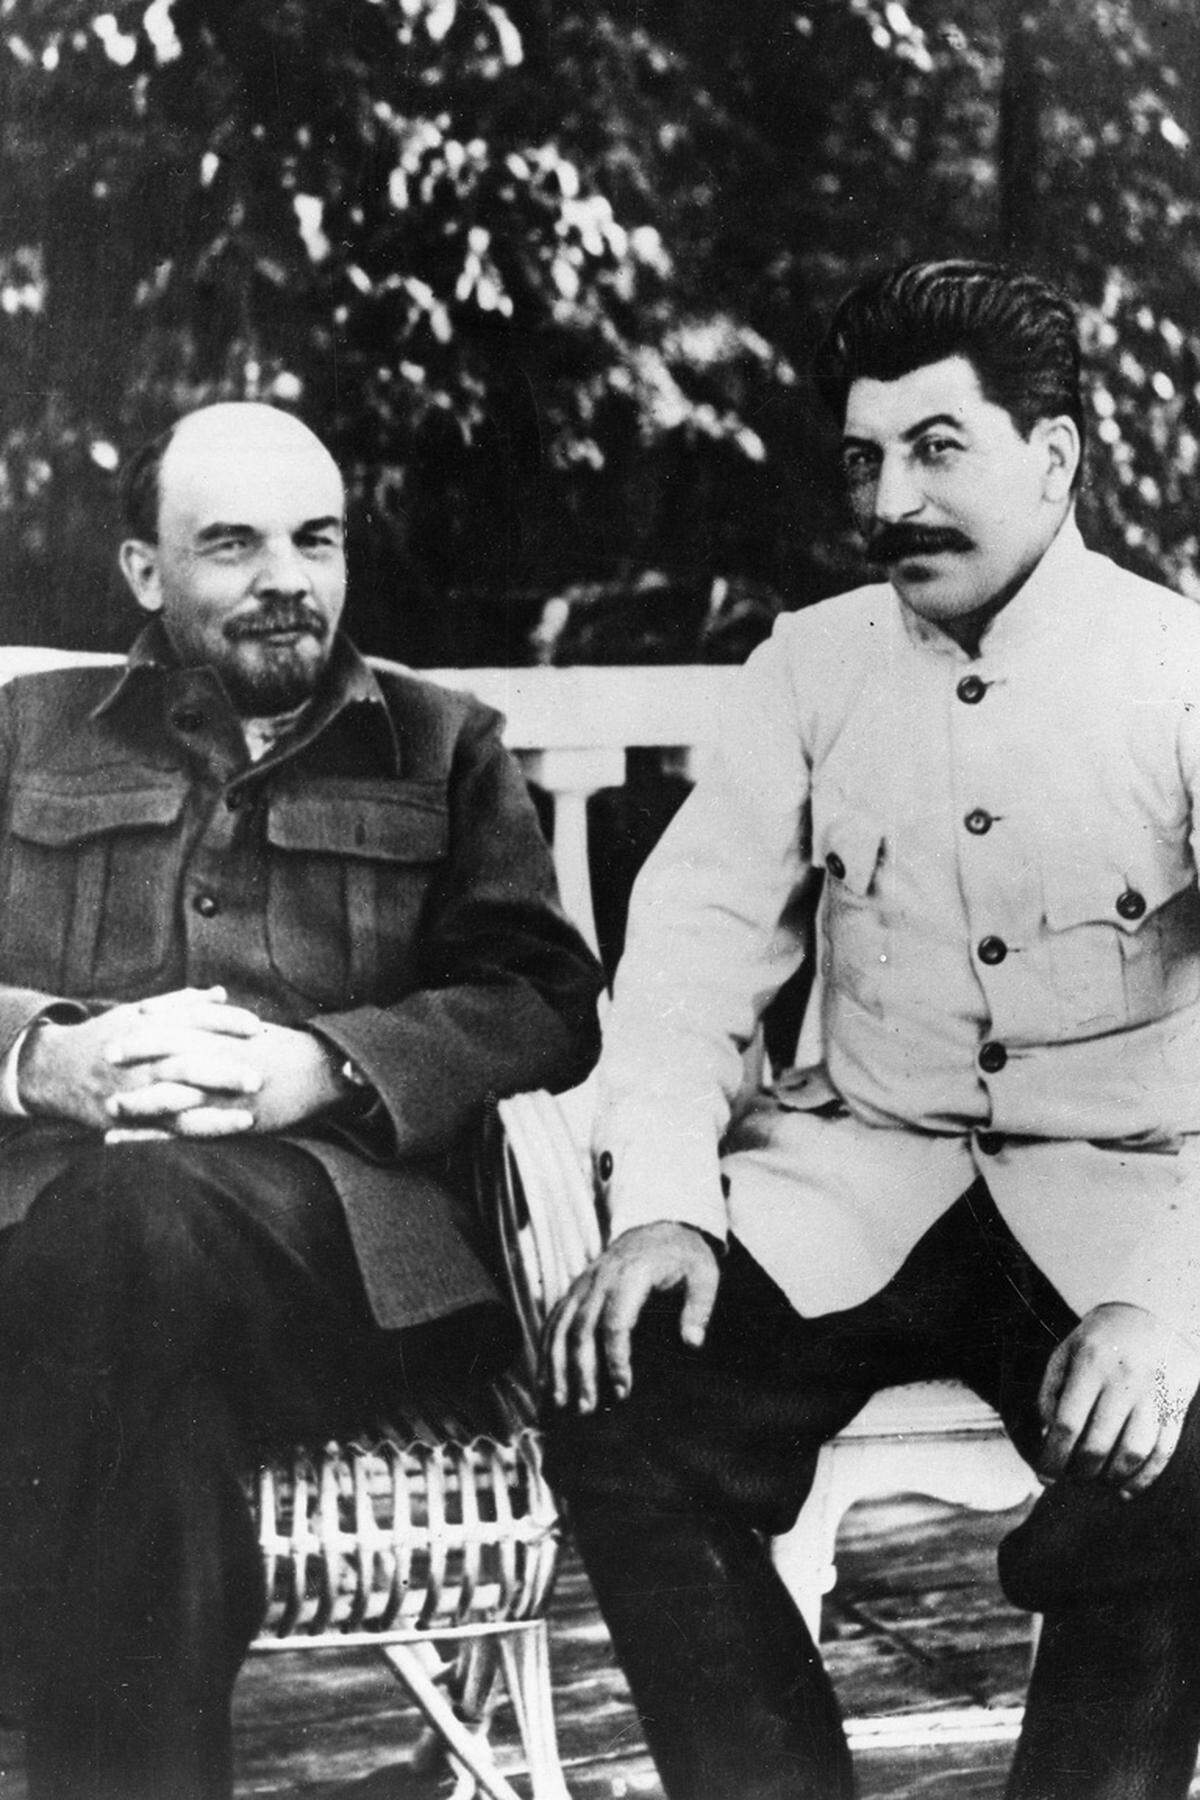 Stalin weist Betreuer und Freunde Lenins an, ihm keinesfalls politische Neuigkeiten zu berichten – das könne den Genossen zu sehr „aufregen“. Ärzte sind ihm berichtspflichtig, Betreuer informieren ihn über alles was in Gorki gesprochen wird. „Lenin kaputt“, soll Stalin den Zustand des Kranken kommentiert haben.